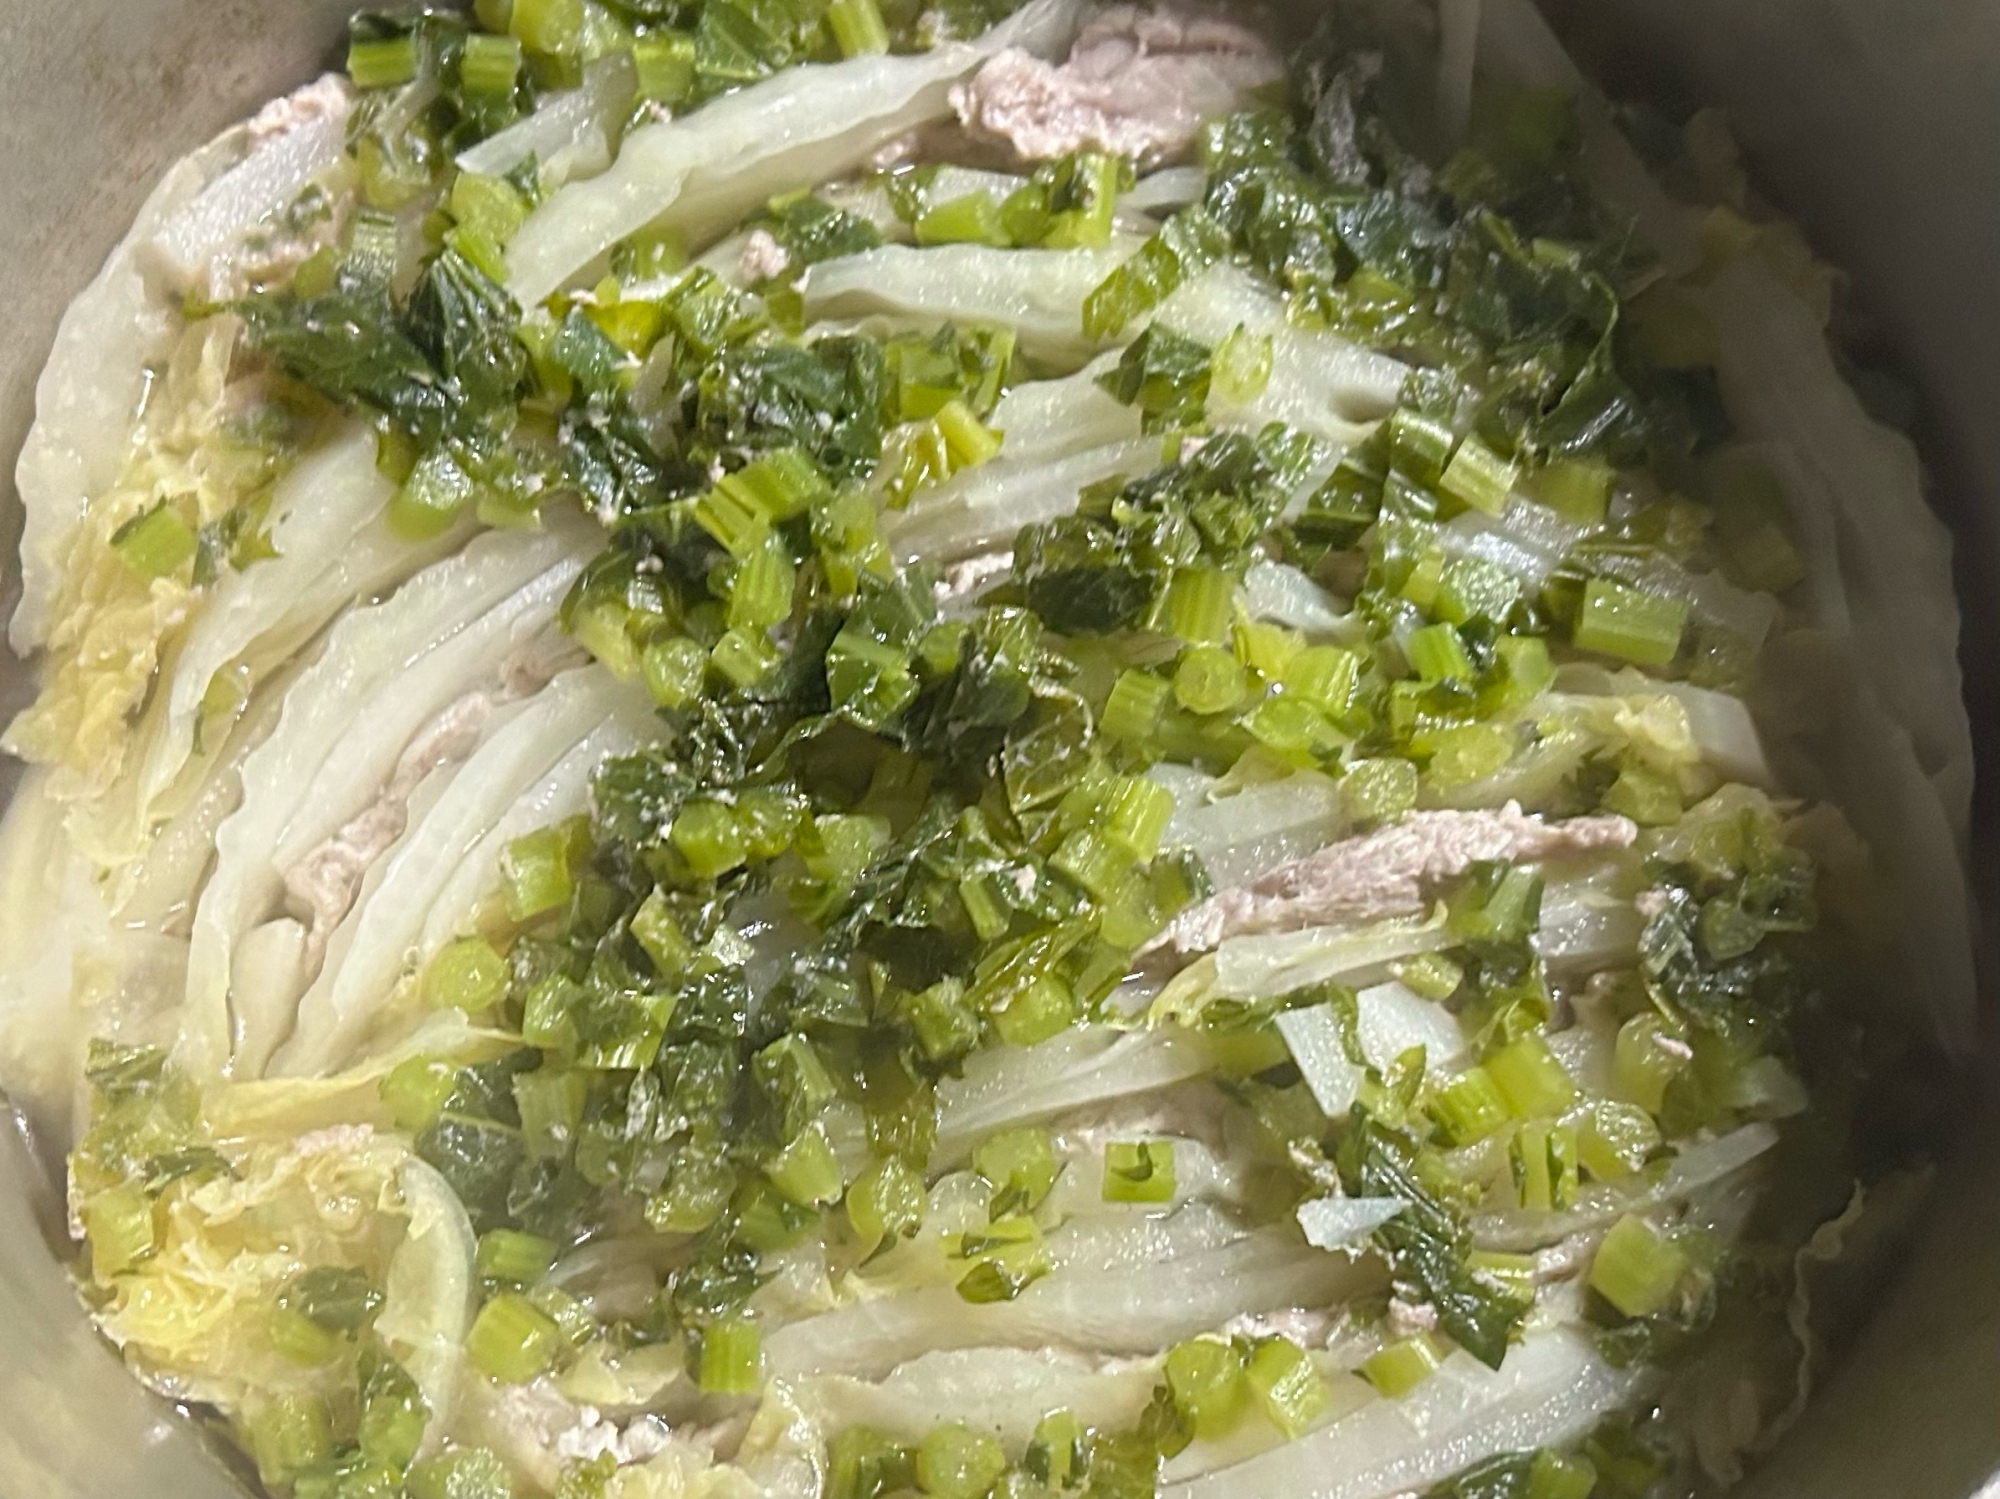 大根、かぶ、白菜のミルフィーユ鍋